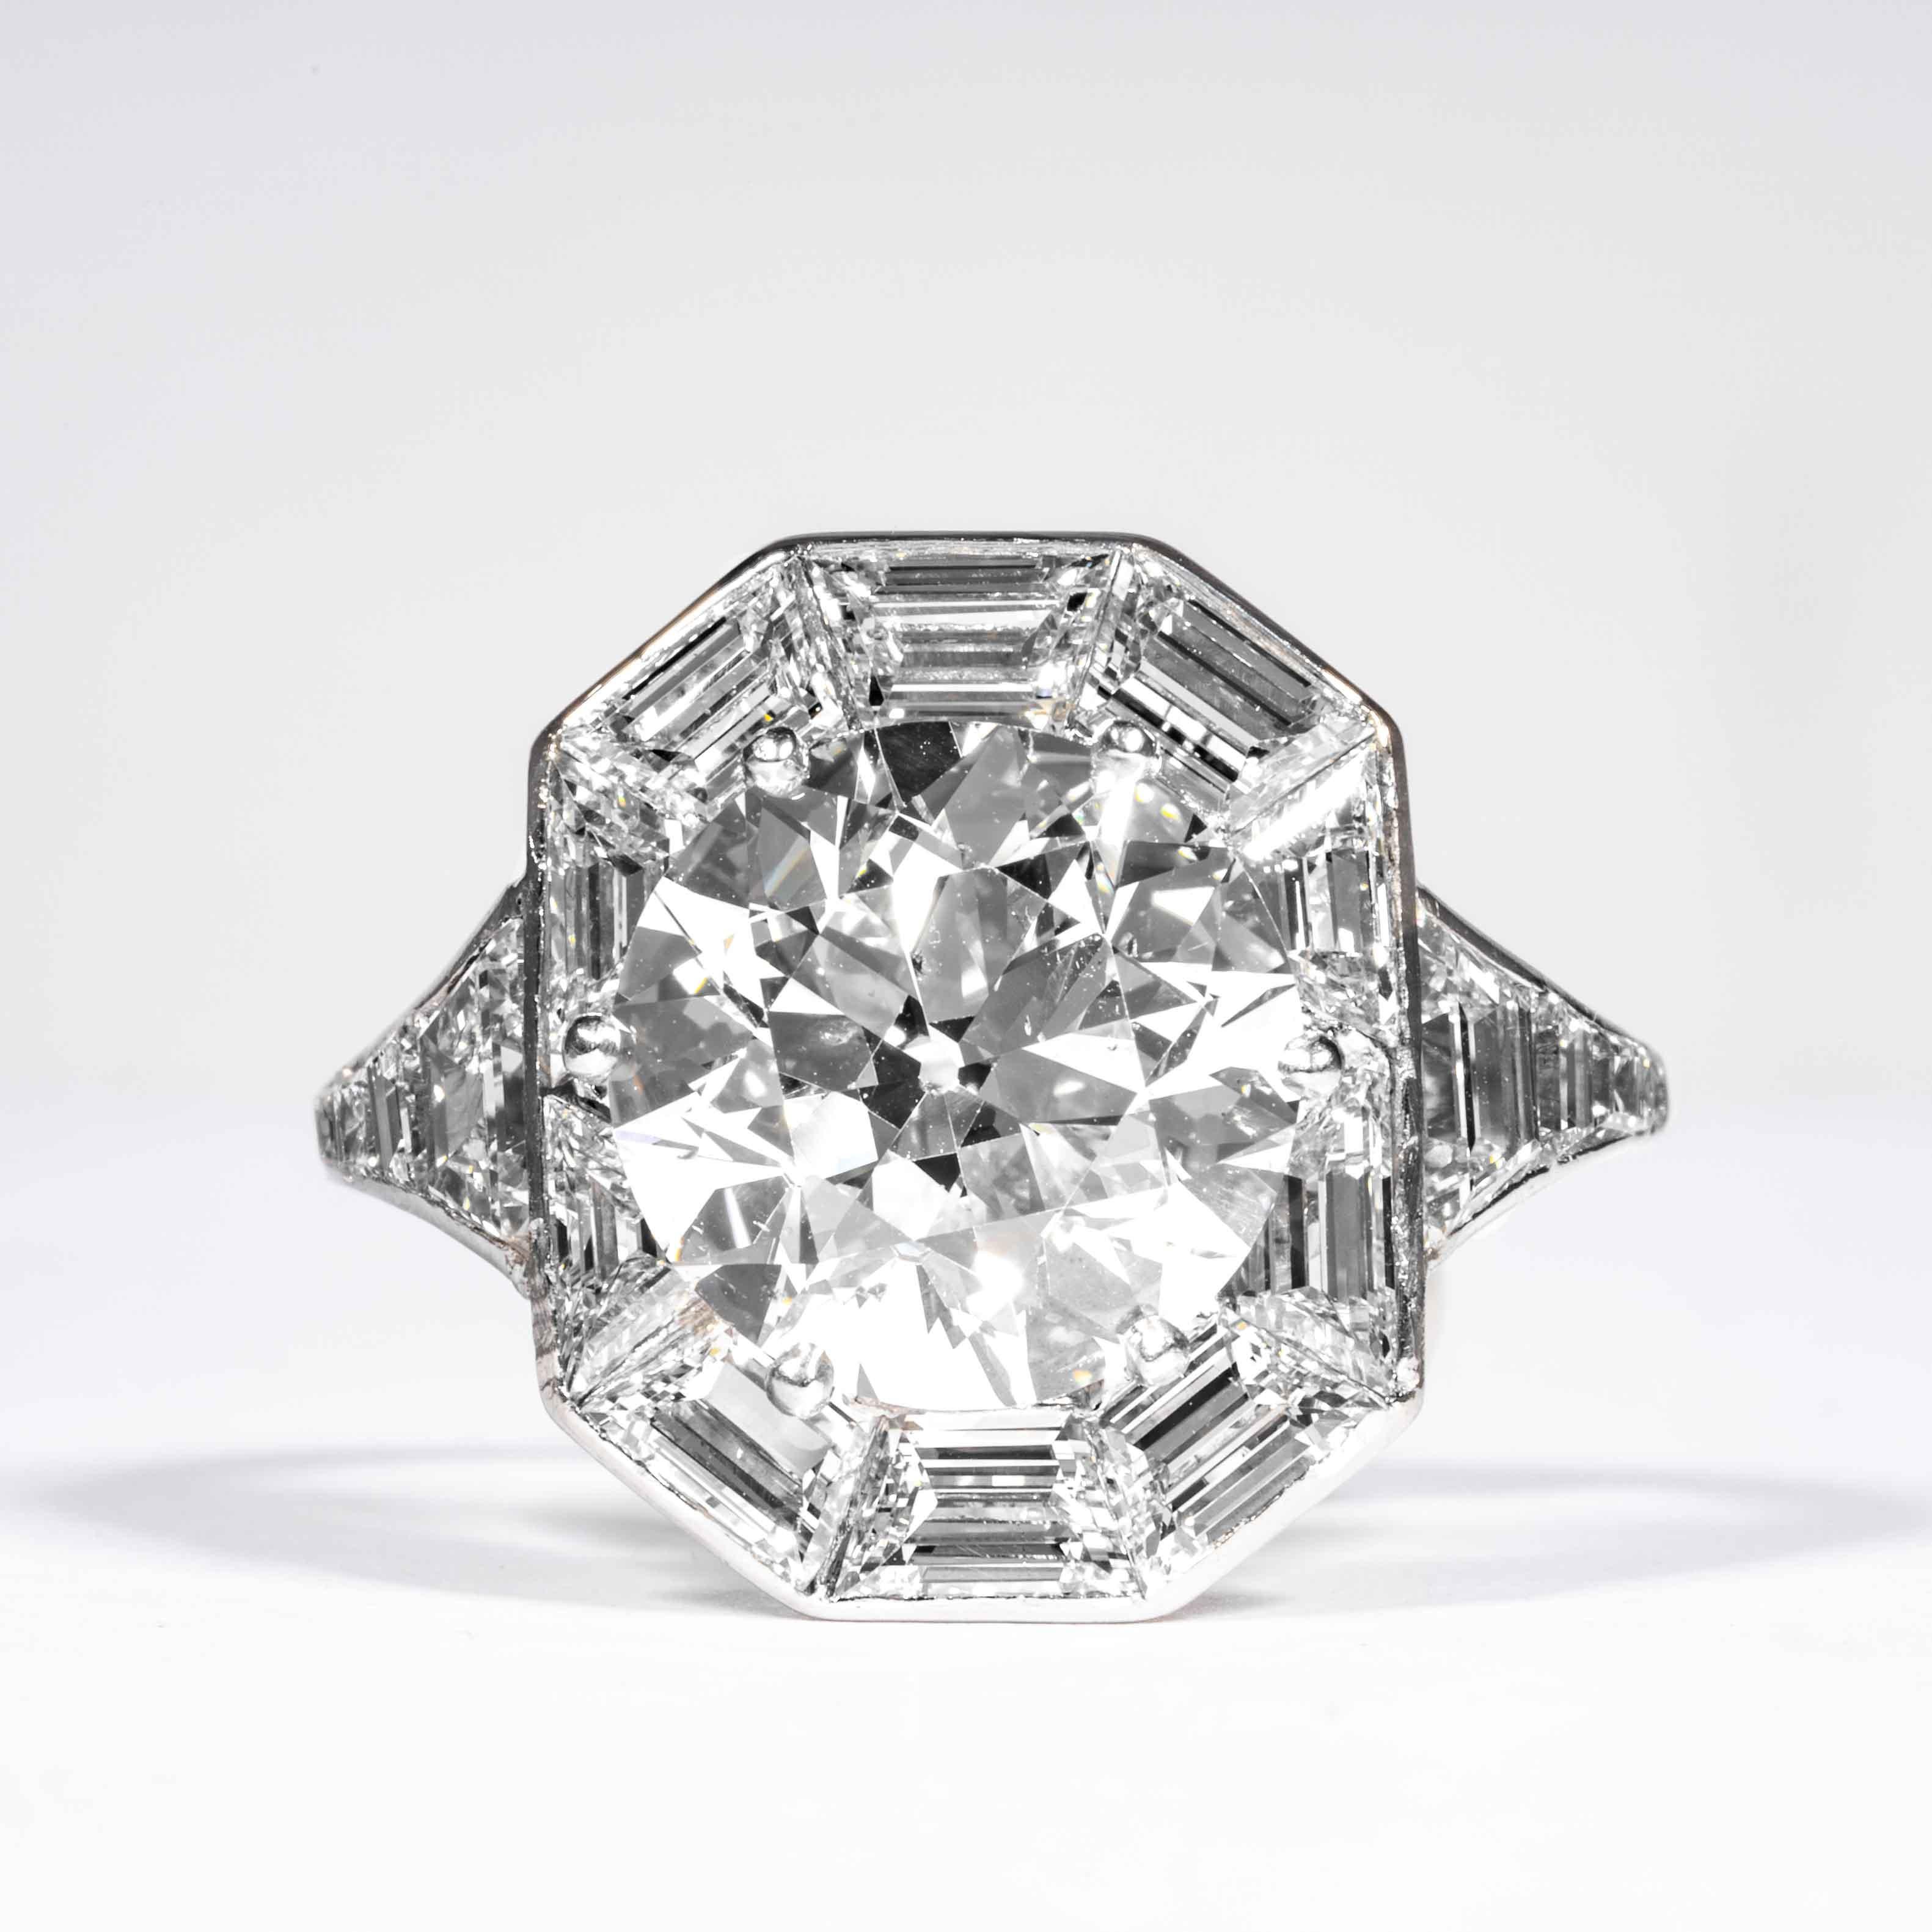 Cette bague en diamant élégante et classique est proposée par Shreve, Crump & Low. Cette bague en platine et diamant art déco de 4,92 carats, certifiée GIA I SI2 et mesurant un diamant de taille européenne ancienne, est unique et envoûtante. Le